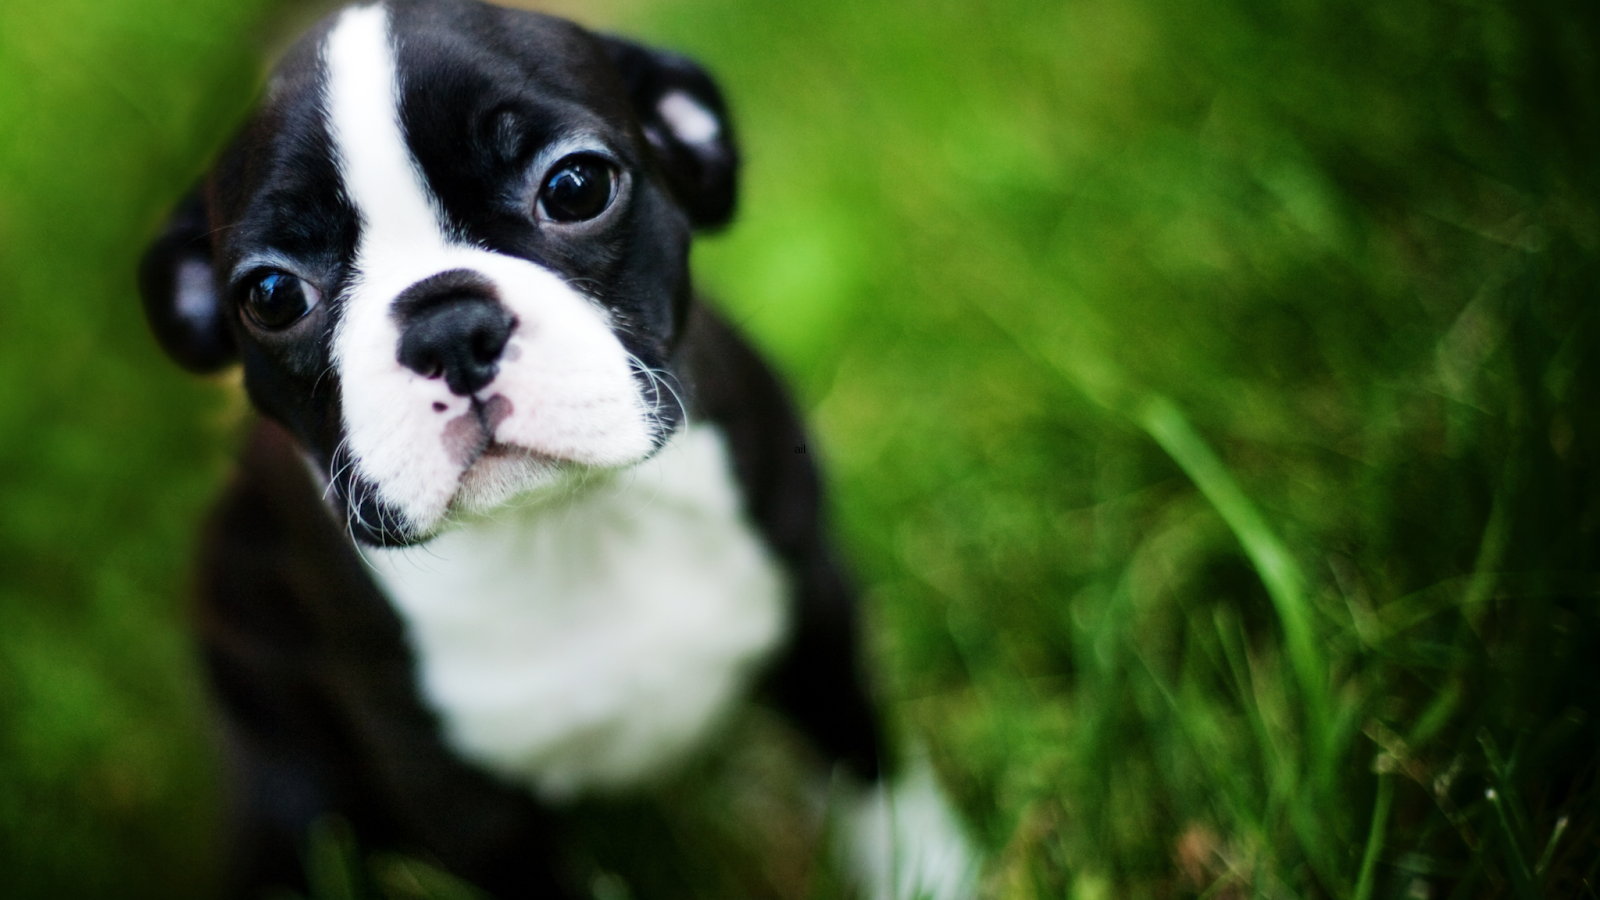 Boston Terrier puppy sitting in grass